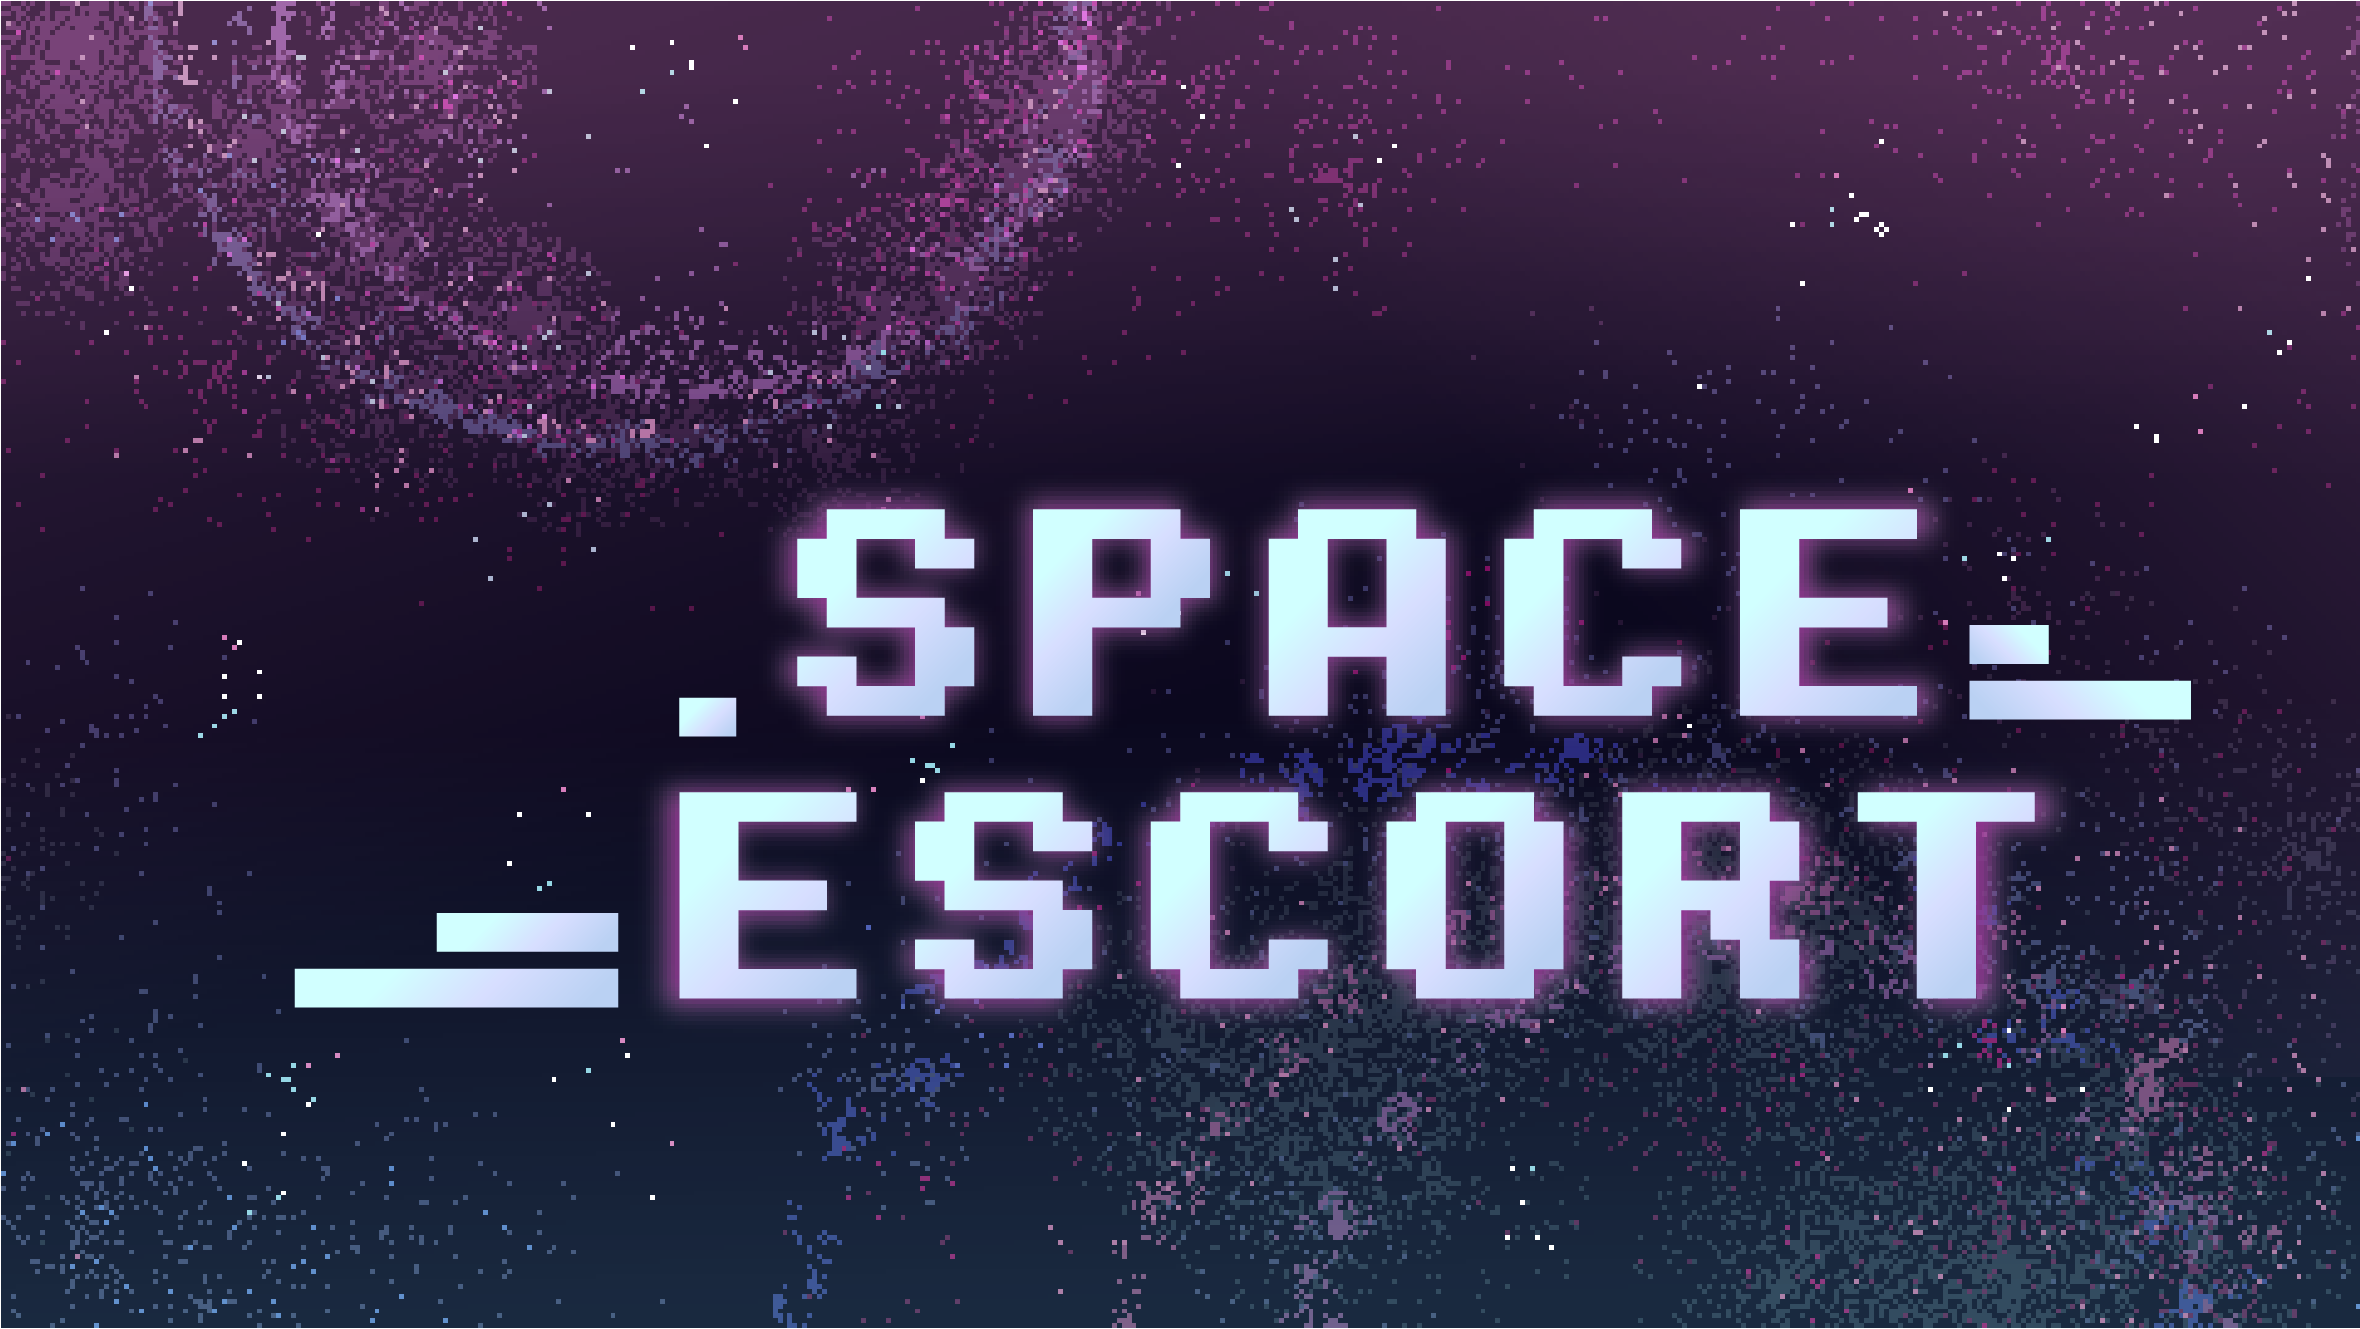 Space Escort